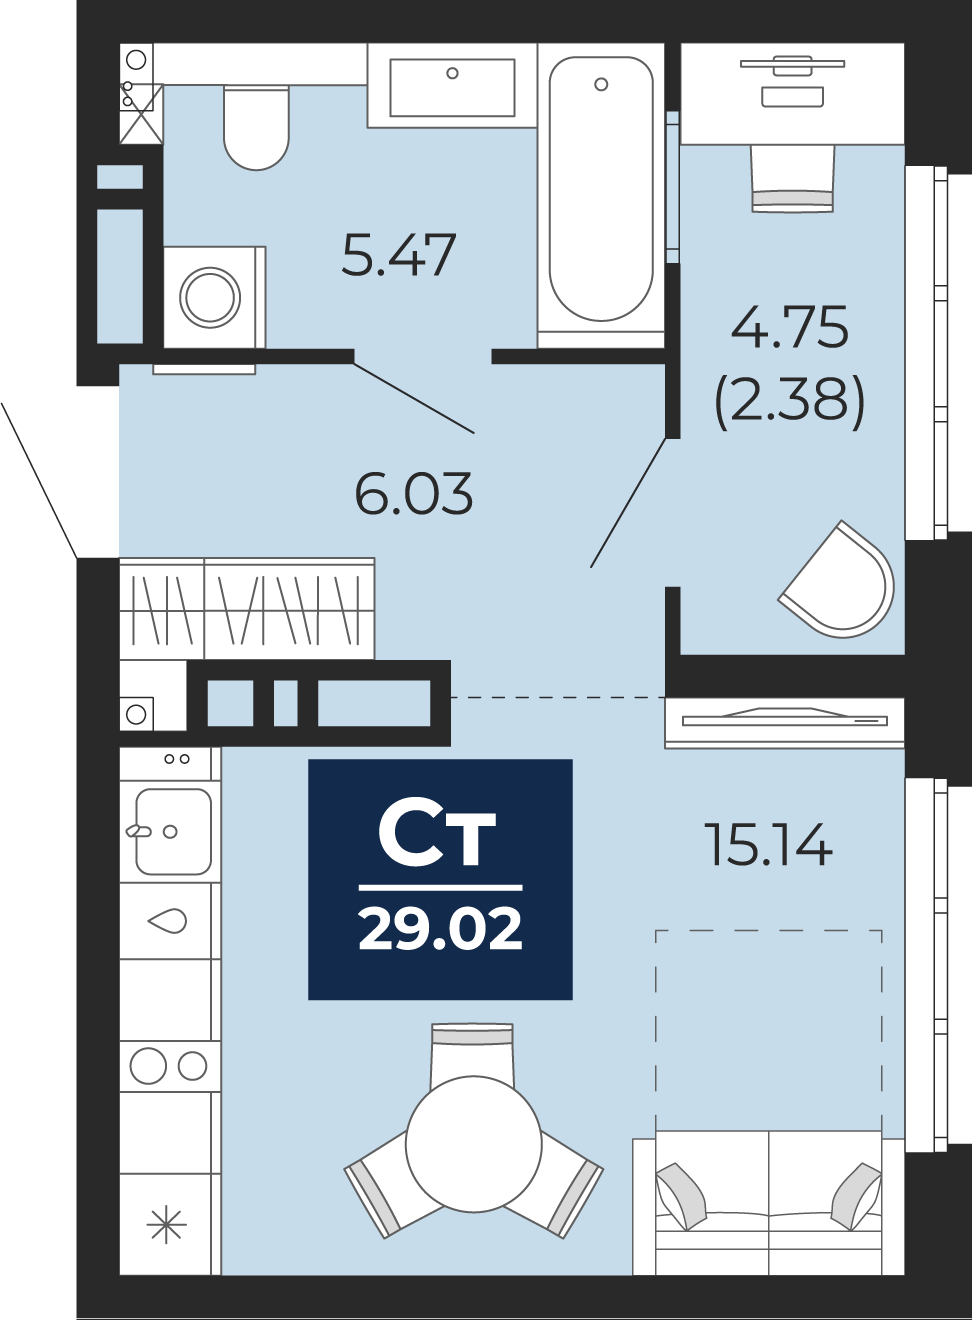 Квартира № 410, Студия, 29.02 кв. м, 17 этаж